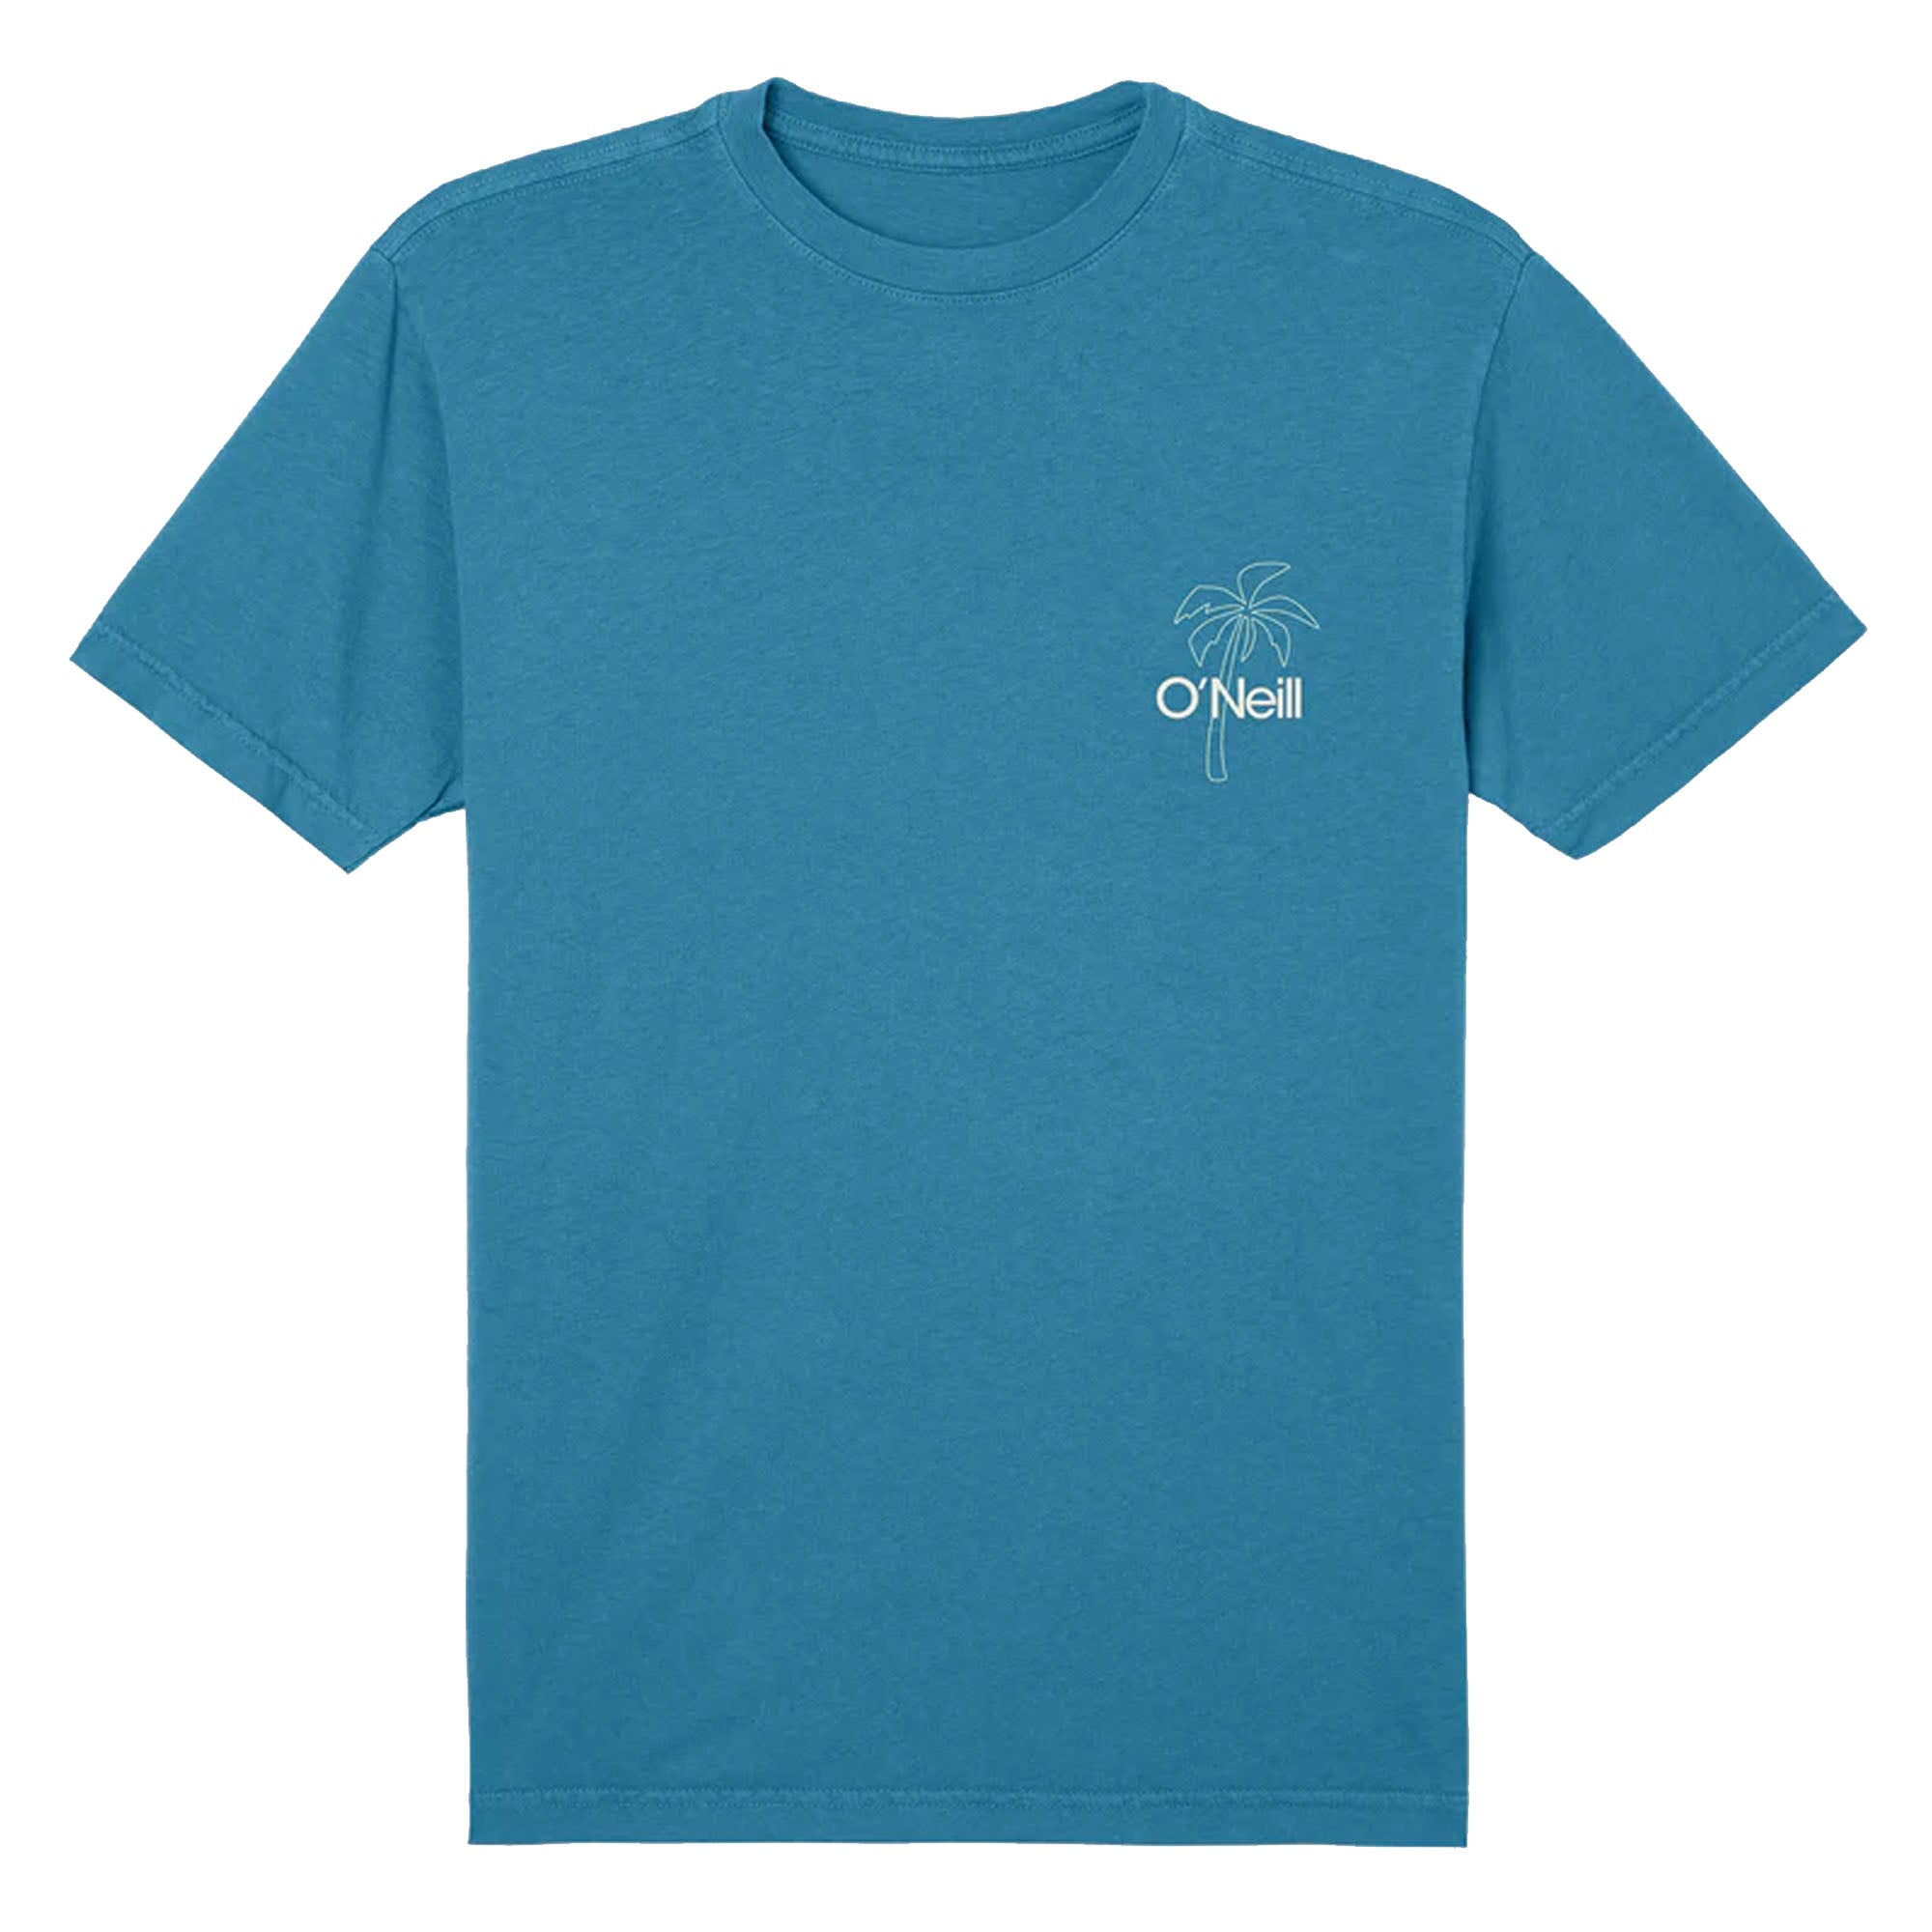 O'Neill OG SO Rad Men's S/S T-Shirt